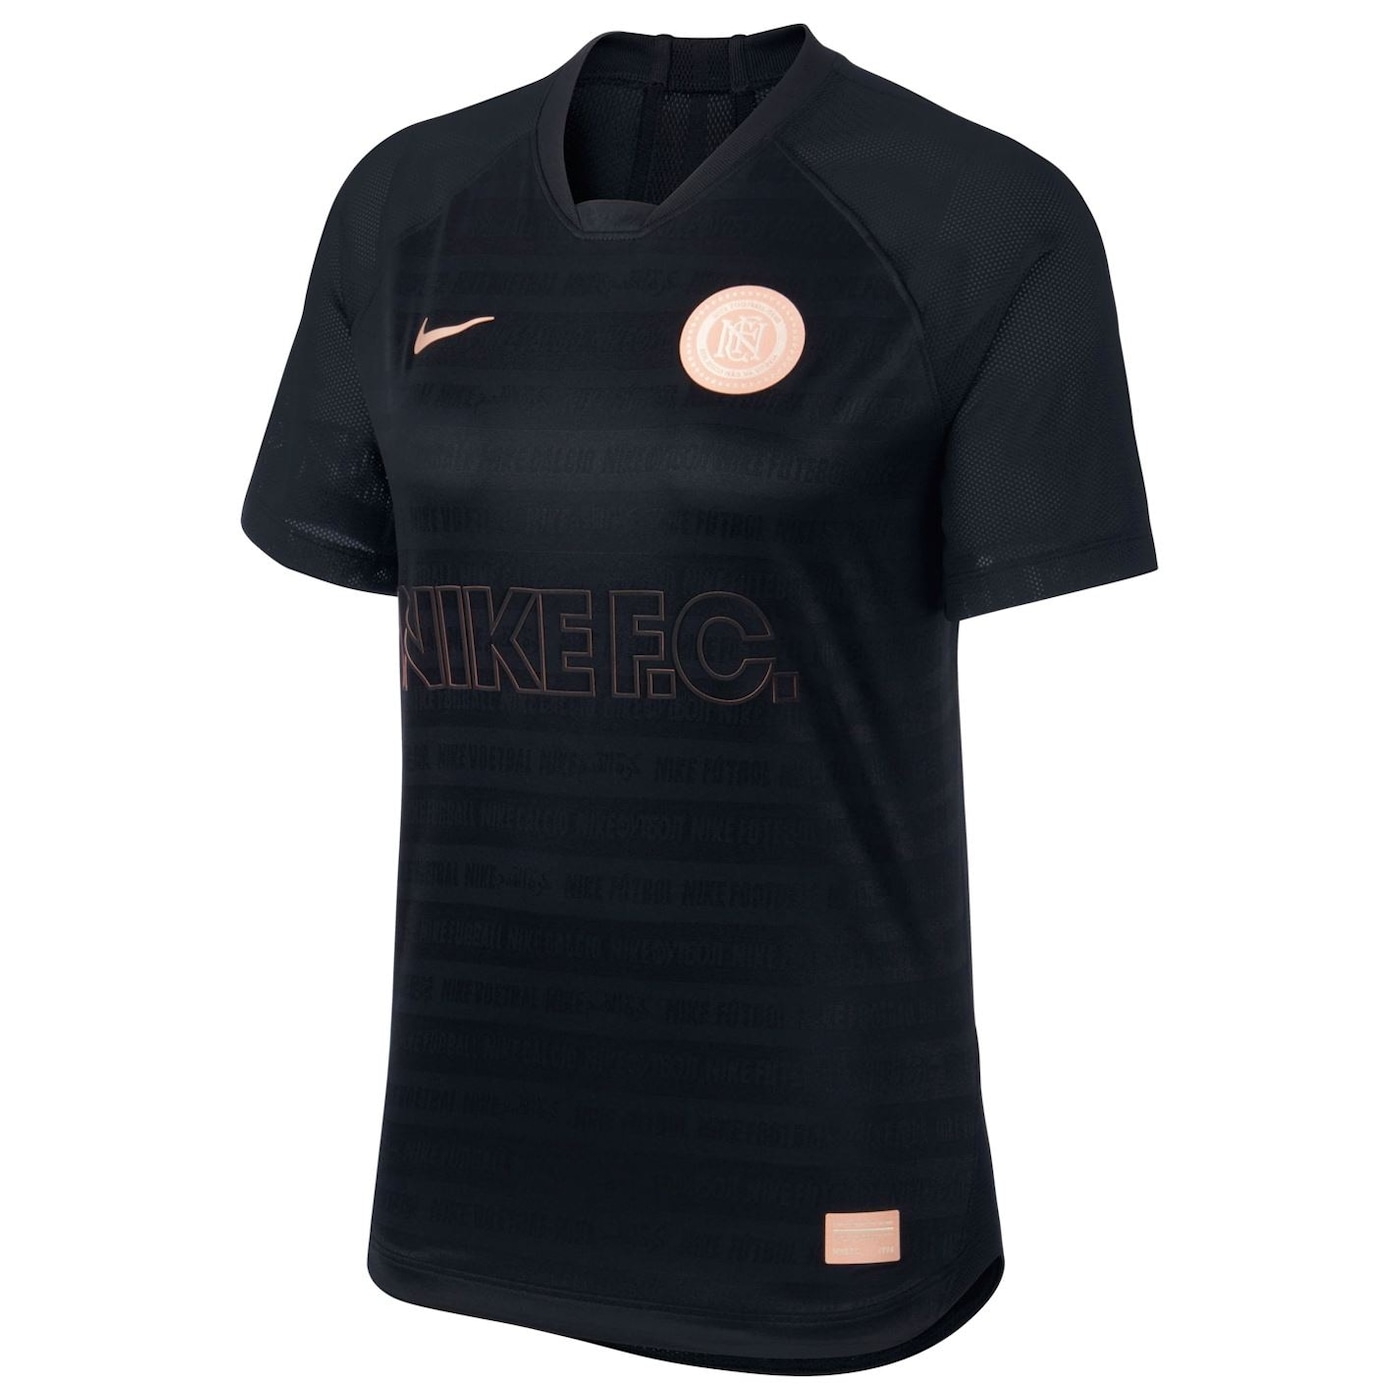 Жени  Дамско облекло  Блузи  С къс ръкав Nike FC Jersey Ladies 1005309-6166047